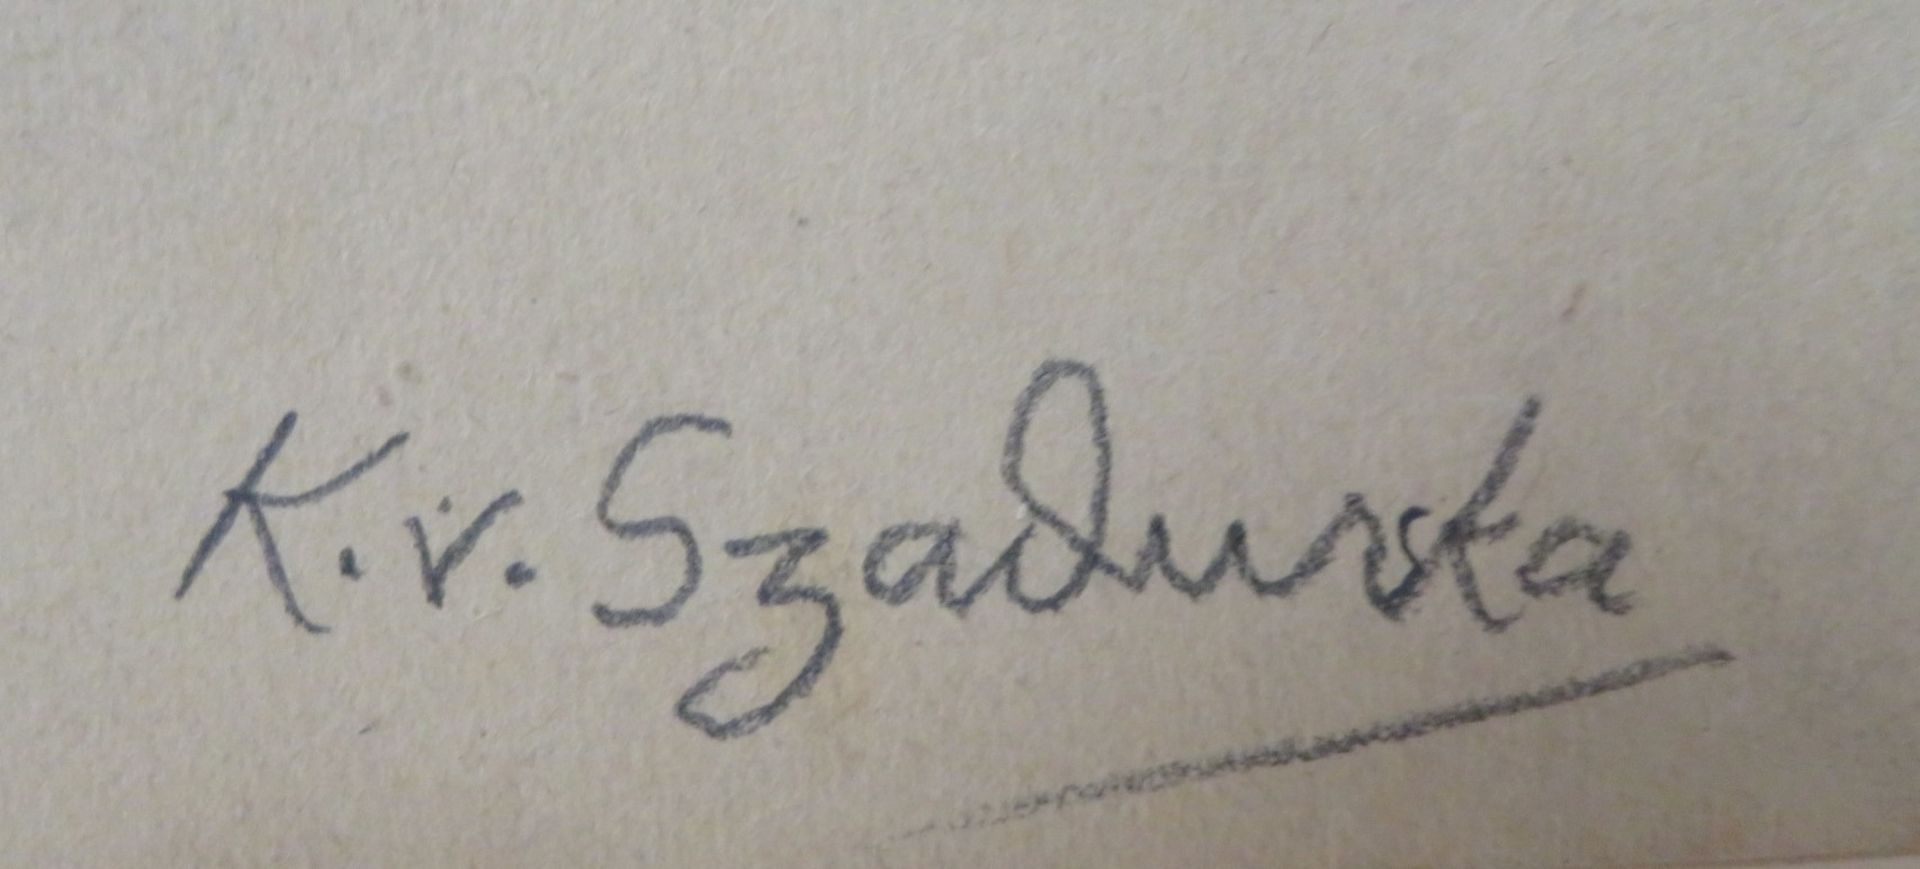 Szadurska, Kasia von, 1886 - 1942, Moskau - Berlin, deutsche Grafikerin und Malerin, - Image 2 of 2